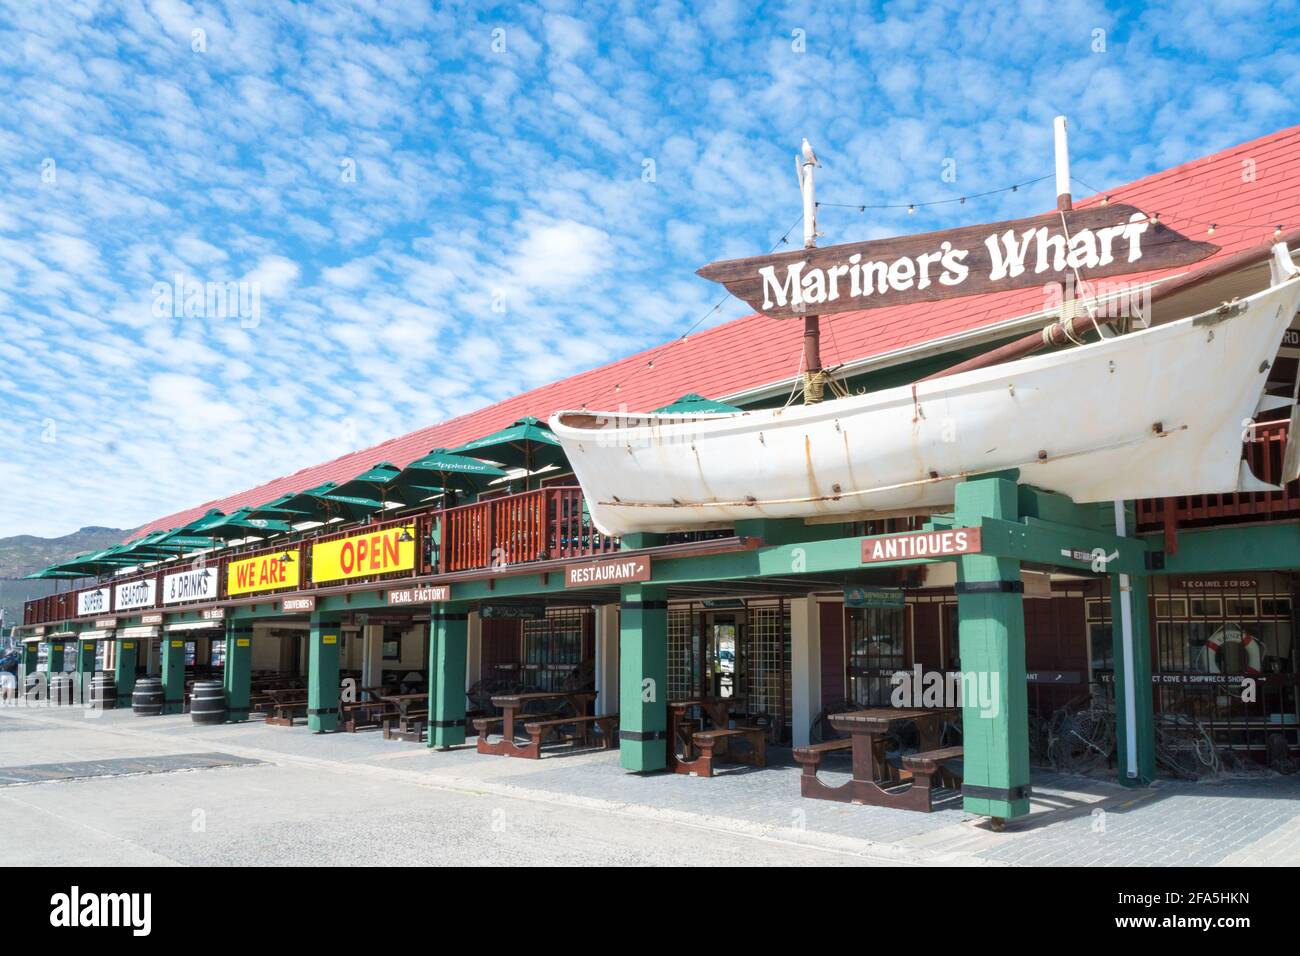 Mariners Wharf im Hafen von Hout Bay, Kapstadt, Südafrika, das ein Touristenziel und ein Restaurant ist Stockfoto